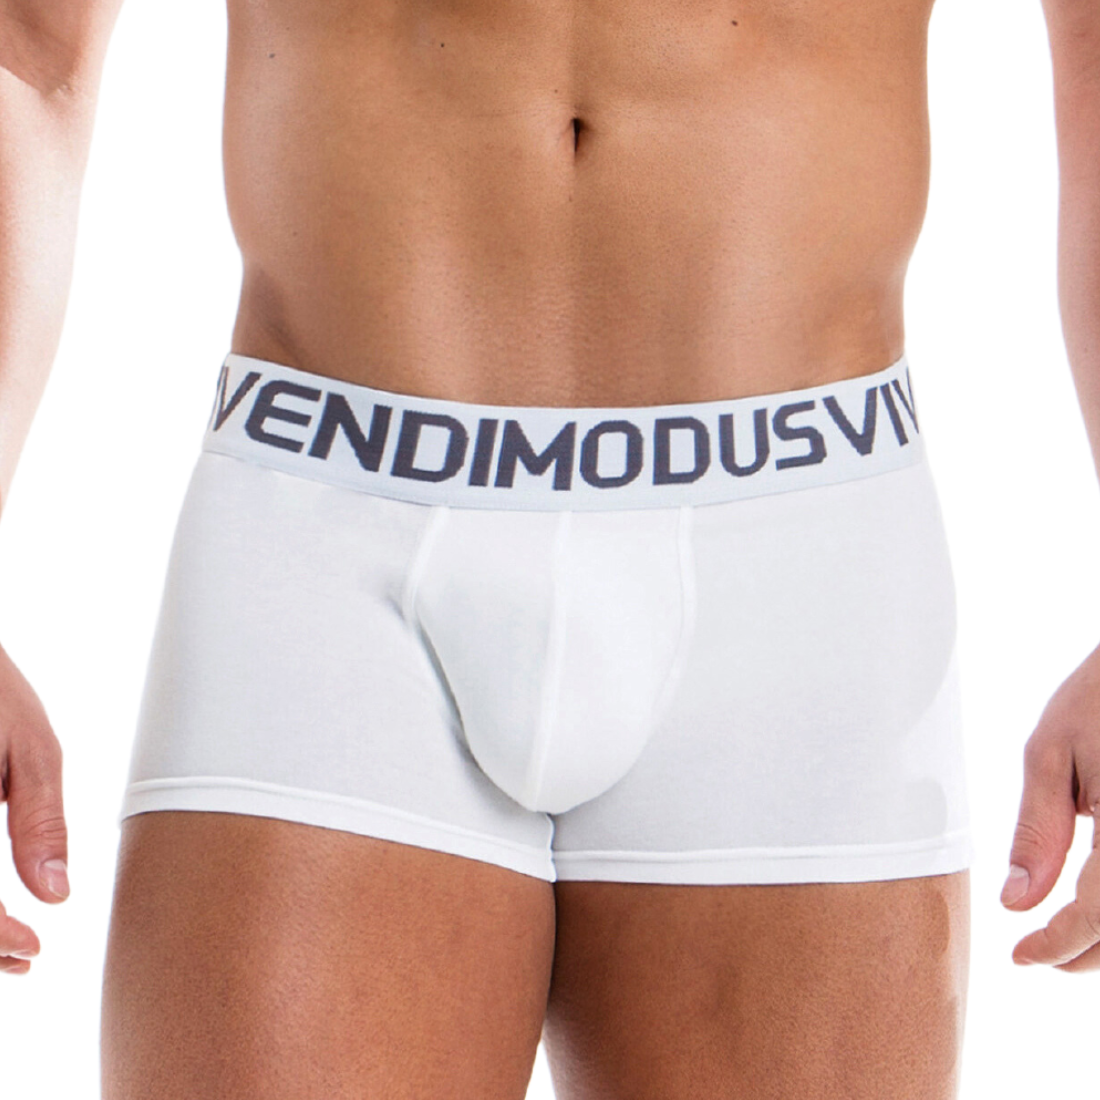 Stijlvolle witte boxershort ontworpen door Modus Vivendi, te koop bij Flavourez.